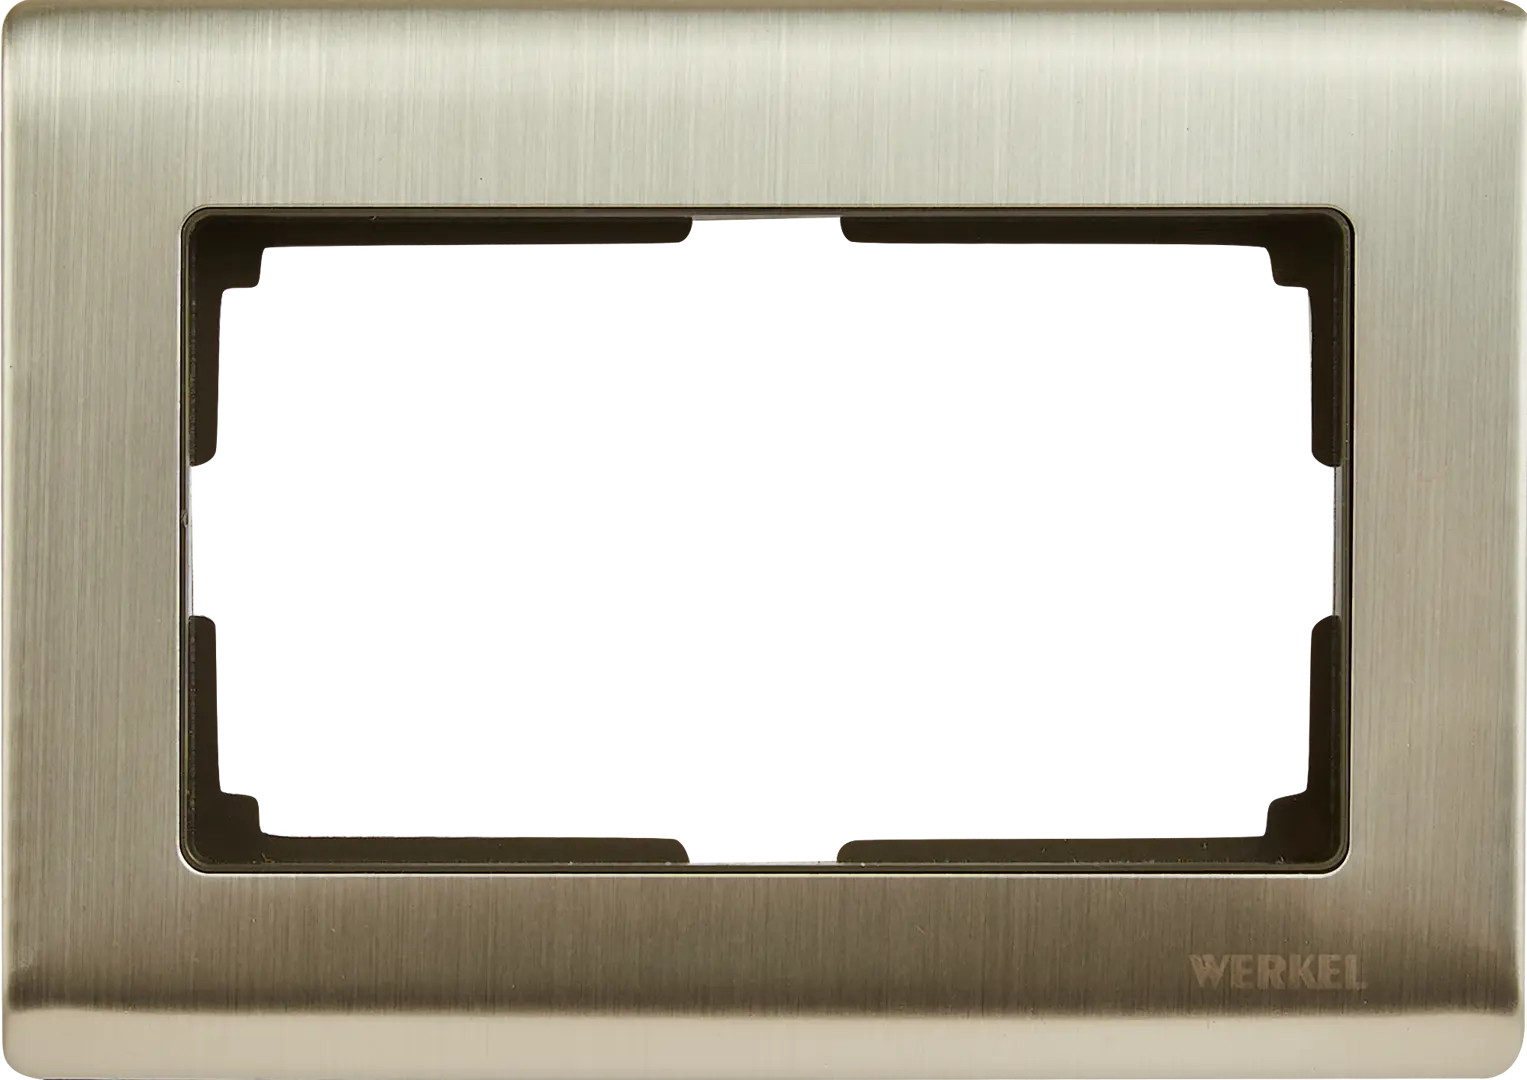 Рамка для розеток и выключателей Werkel Metallic 2 поста цвет глянцевый никель рамка на 2 поста werkel metallic w0021602 4690389159039